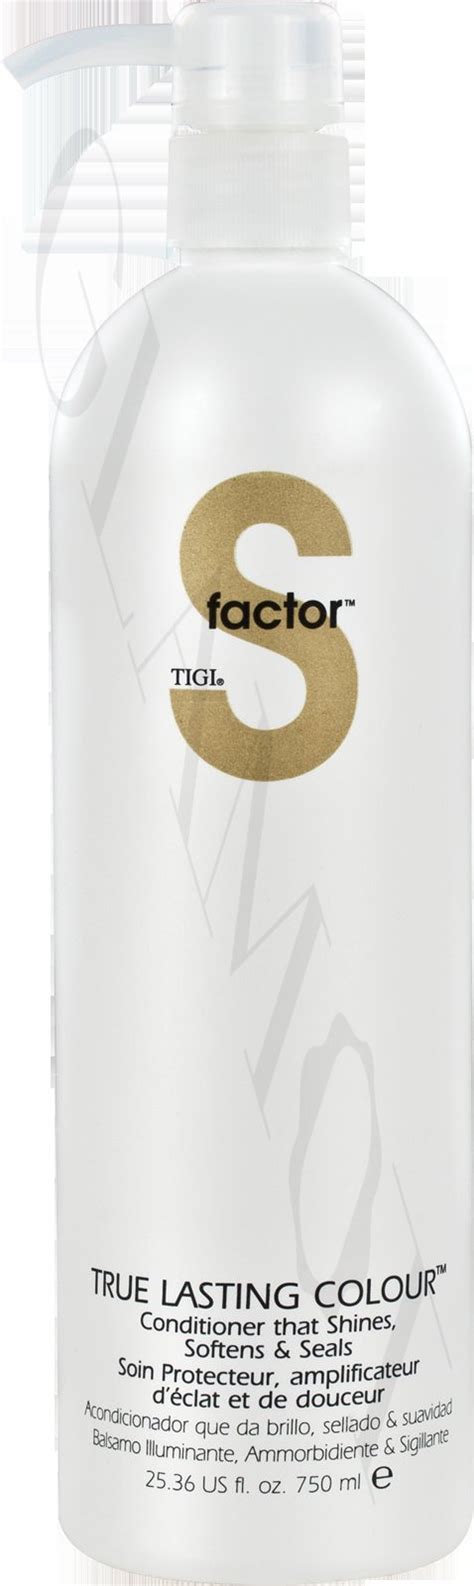 Tigi S Factor True Lasting Colour Conditioner Glamot Com